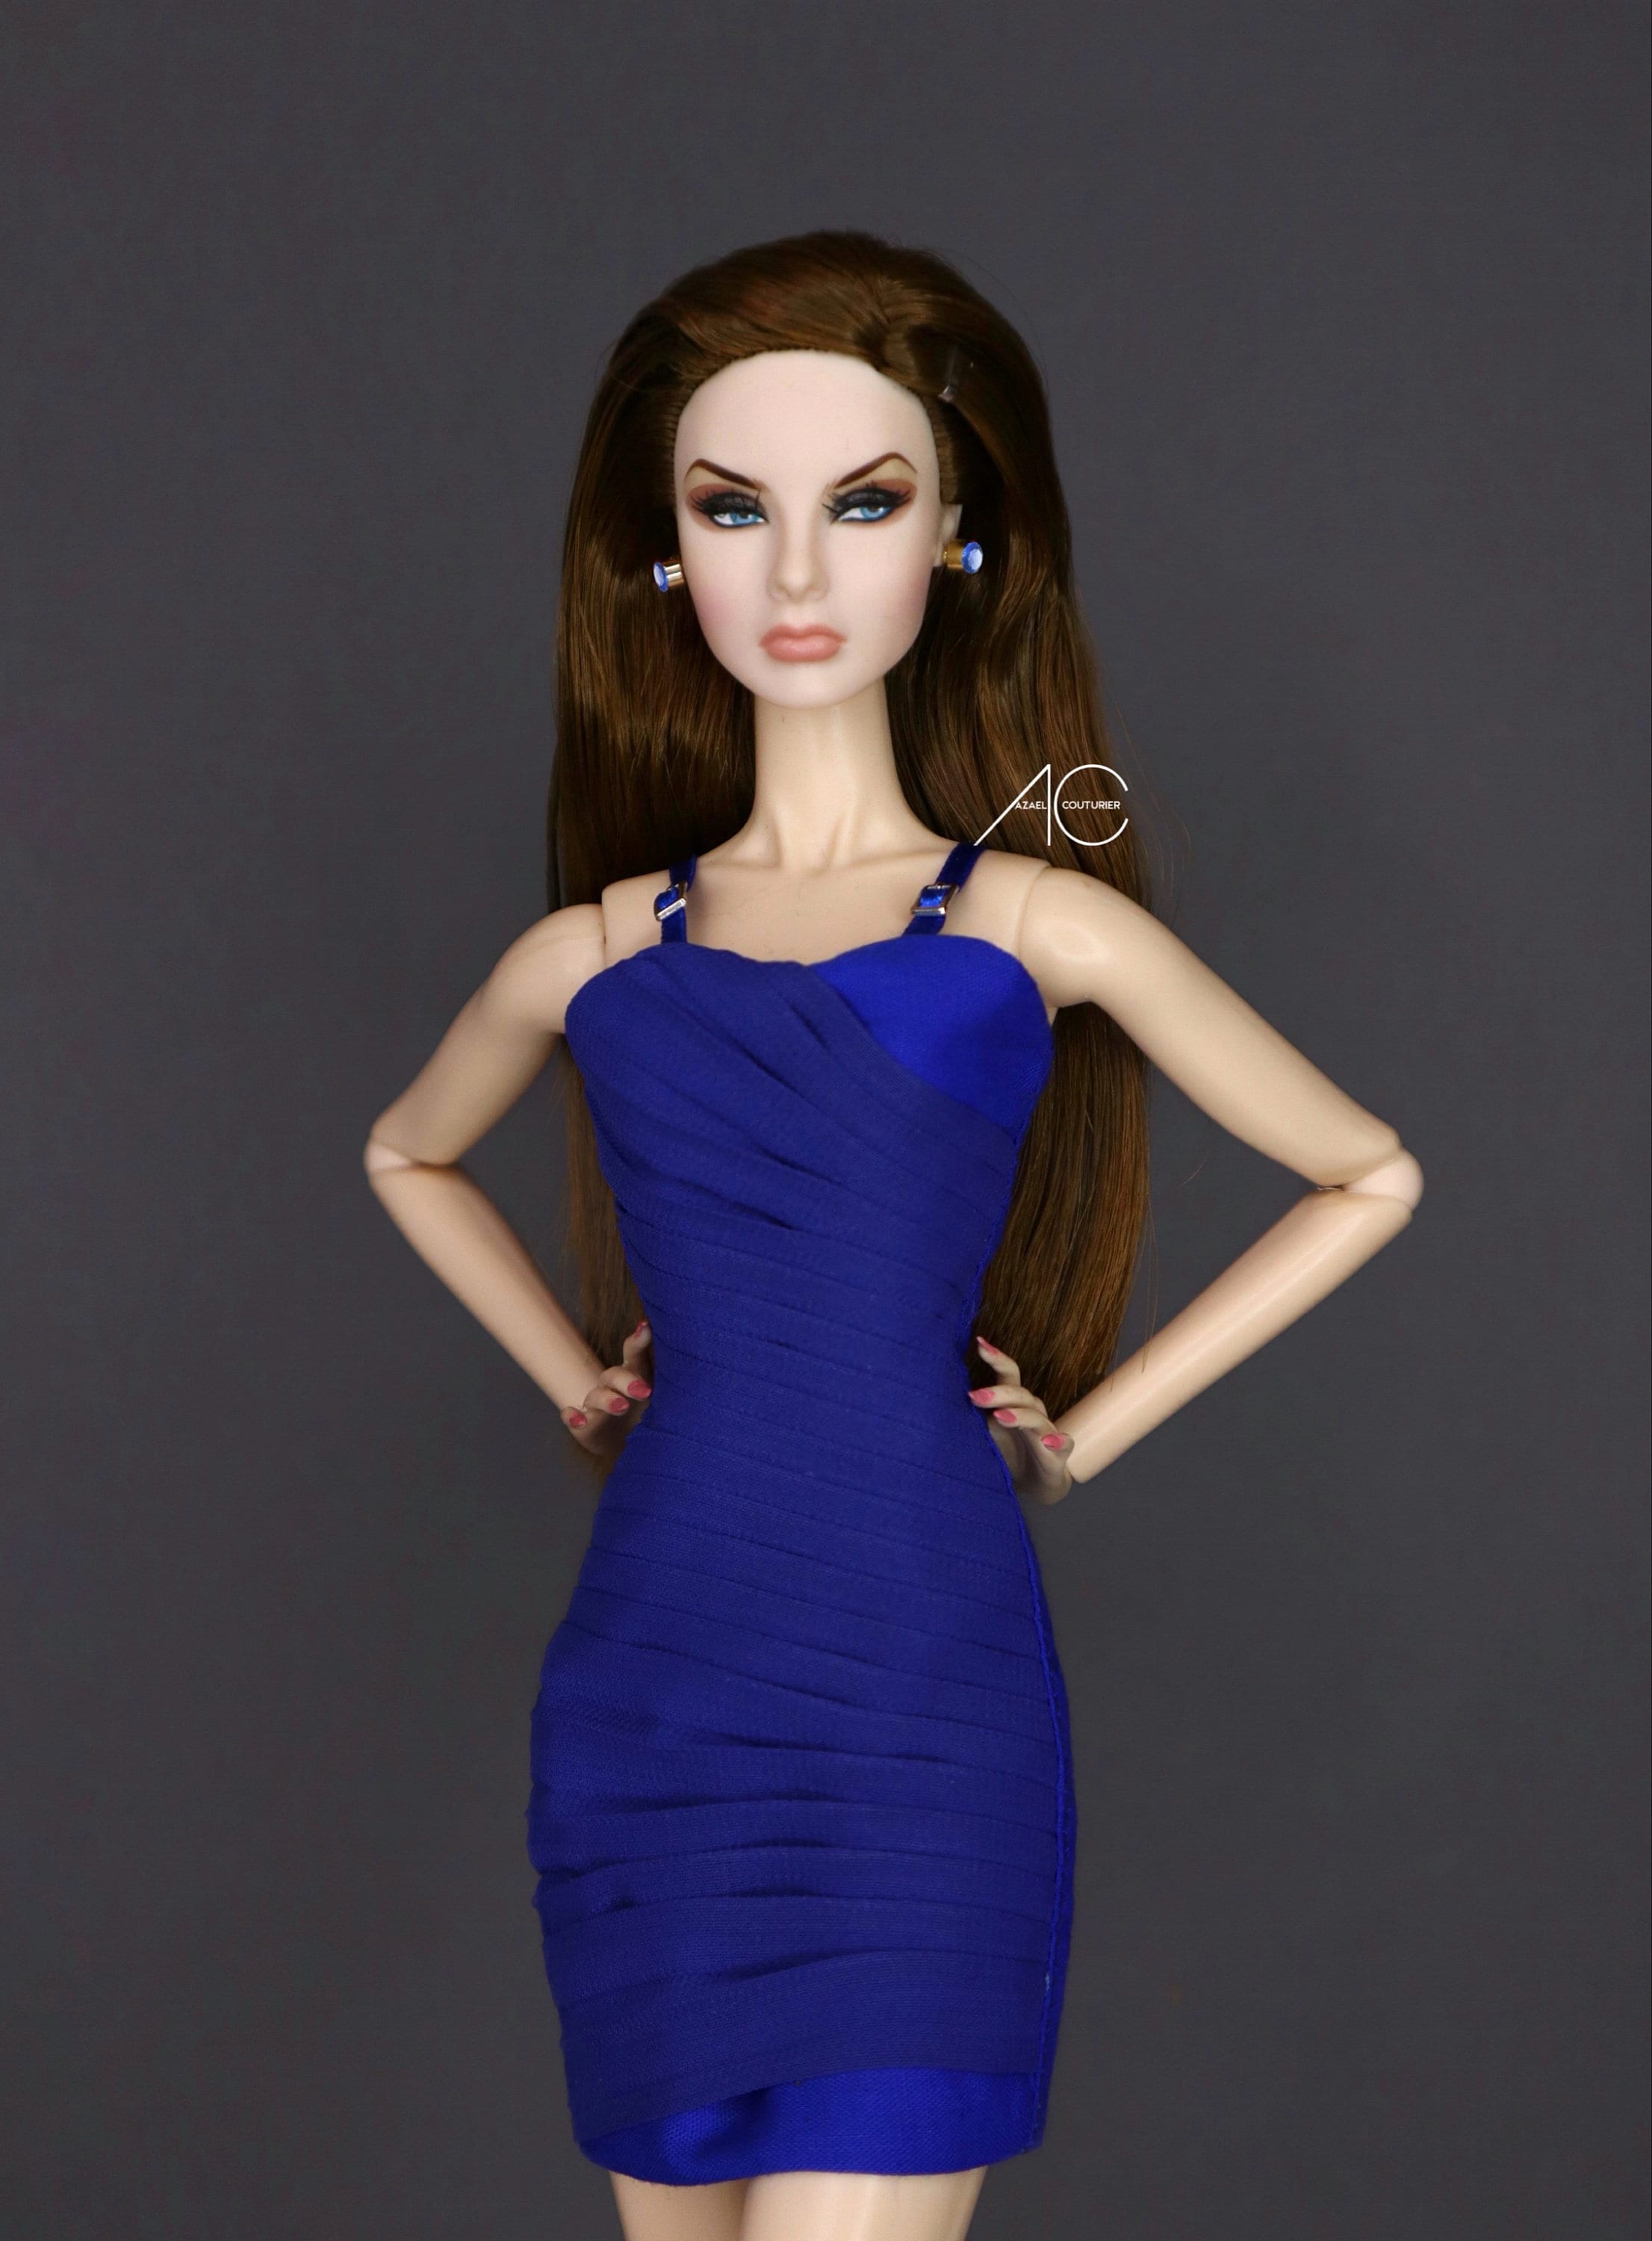 SHASARIGNIS Barbie, Fashion Royalty : Coiffeuse de rêve de Barbie / Barbie  Light up vanity